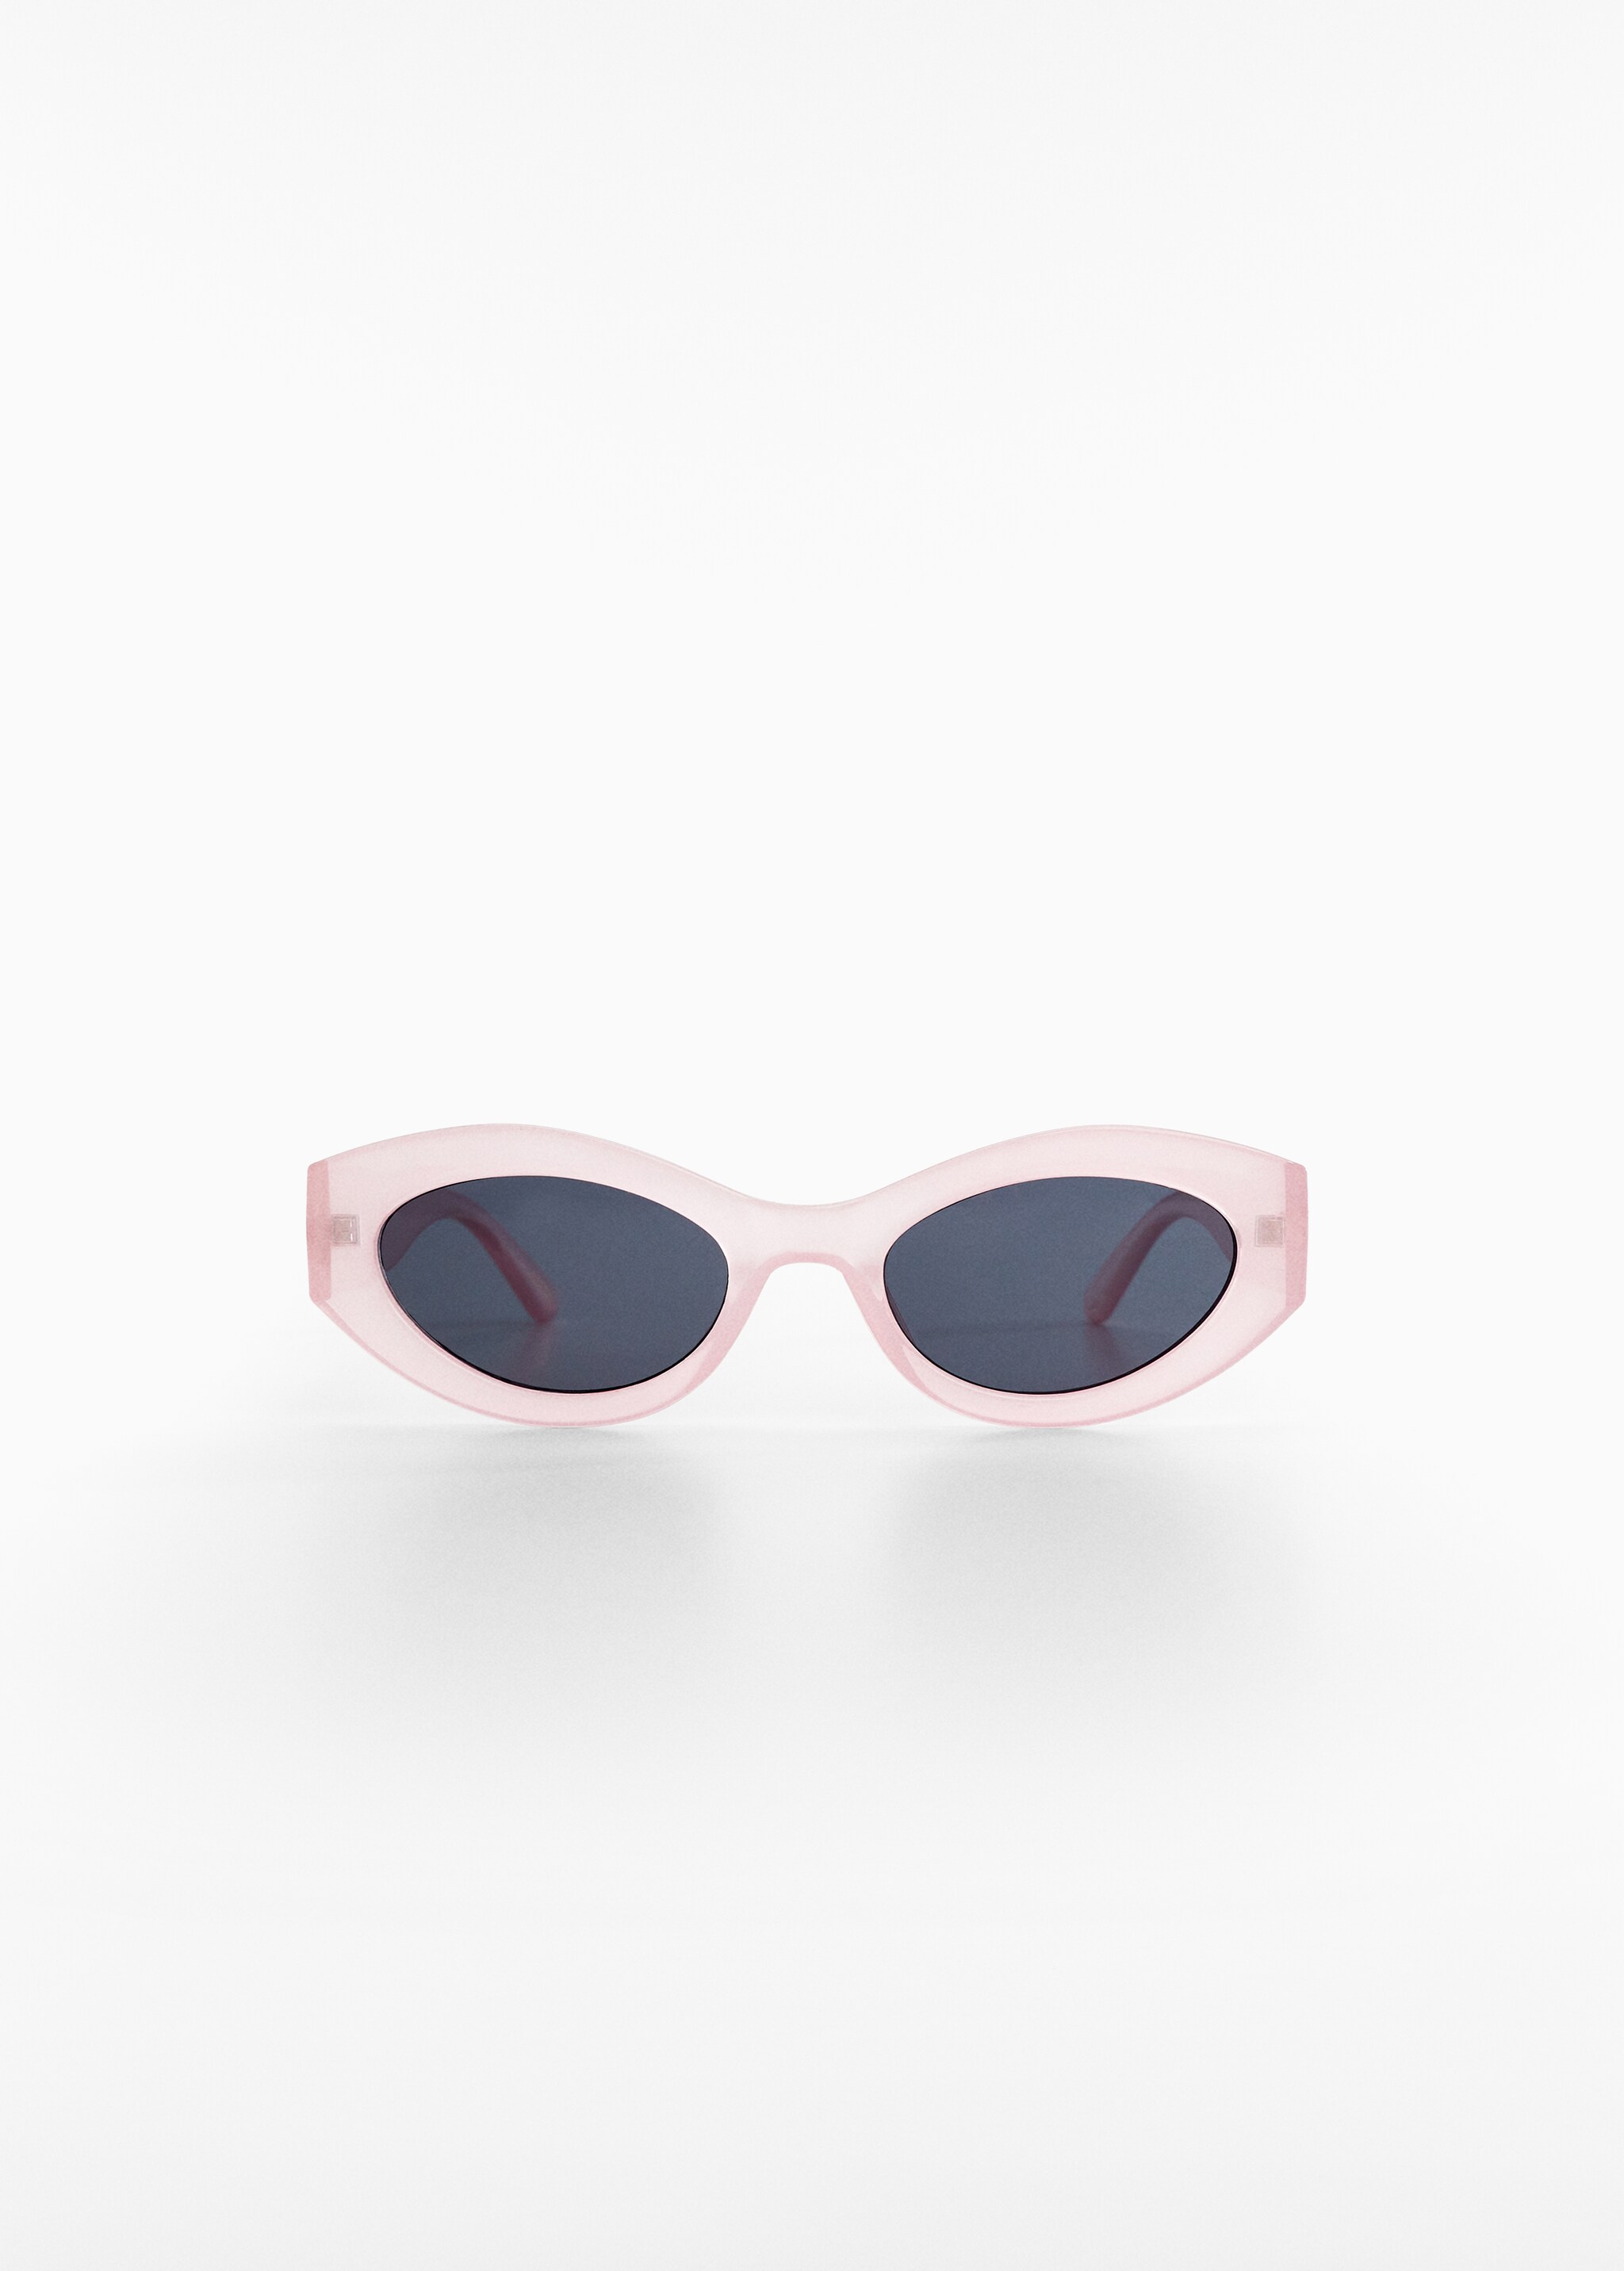 Gafas de sol ovaladas - Artículo sin modelo